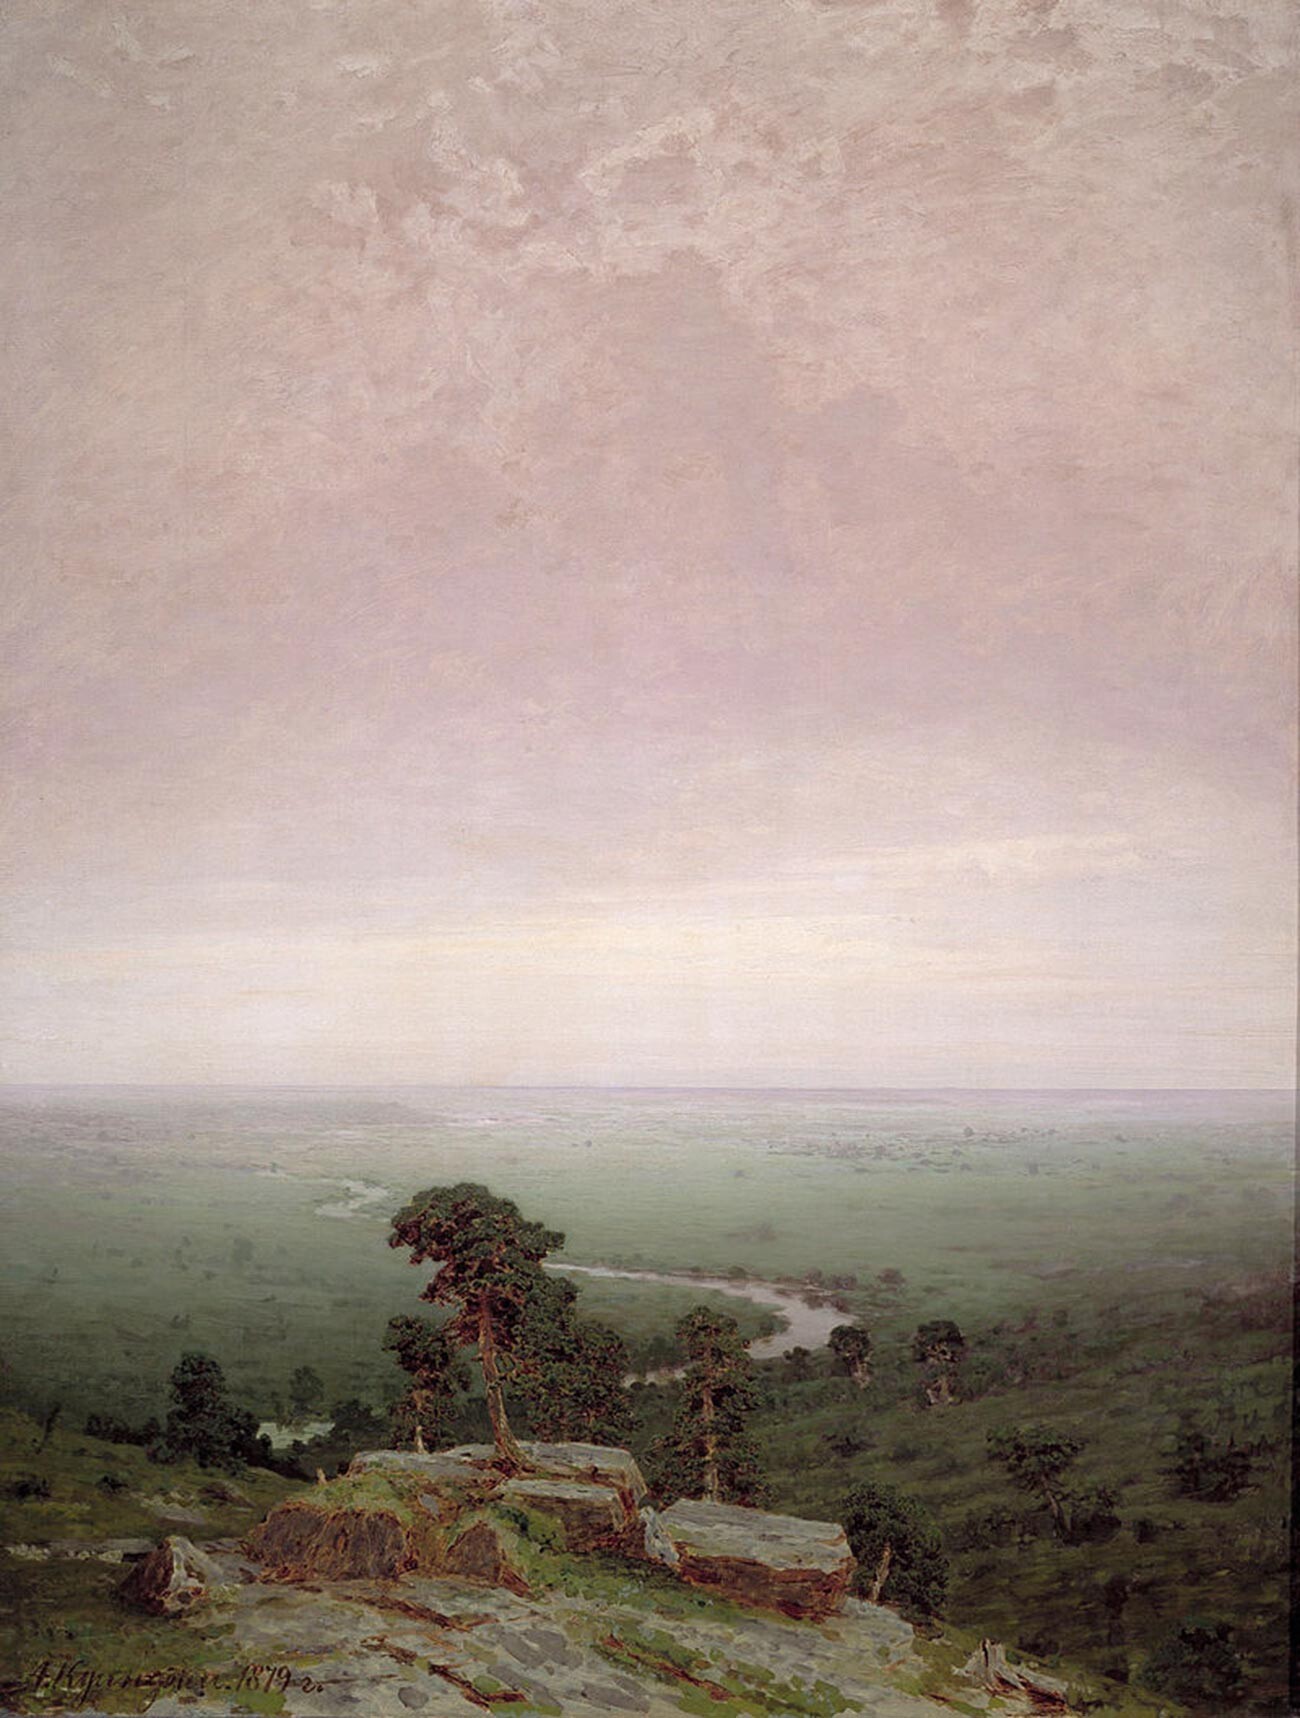 アルヒープ・クインジ、『北方』、1879年